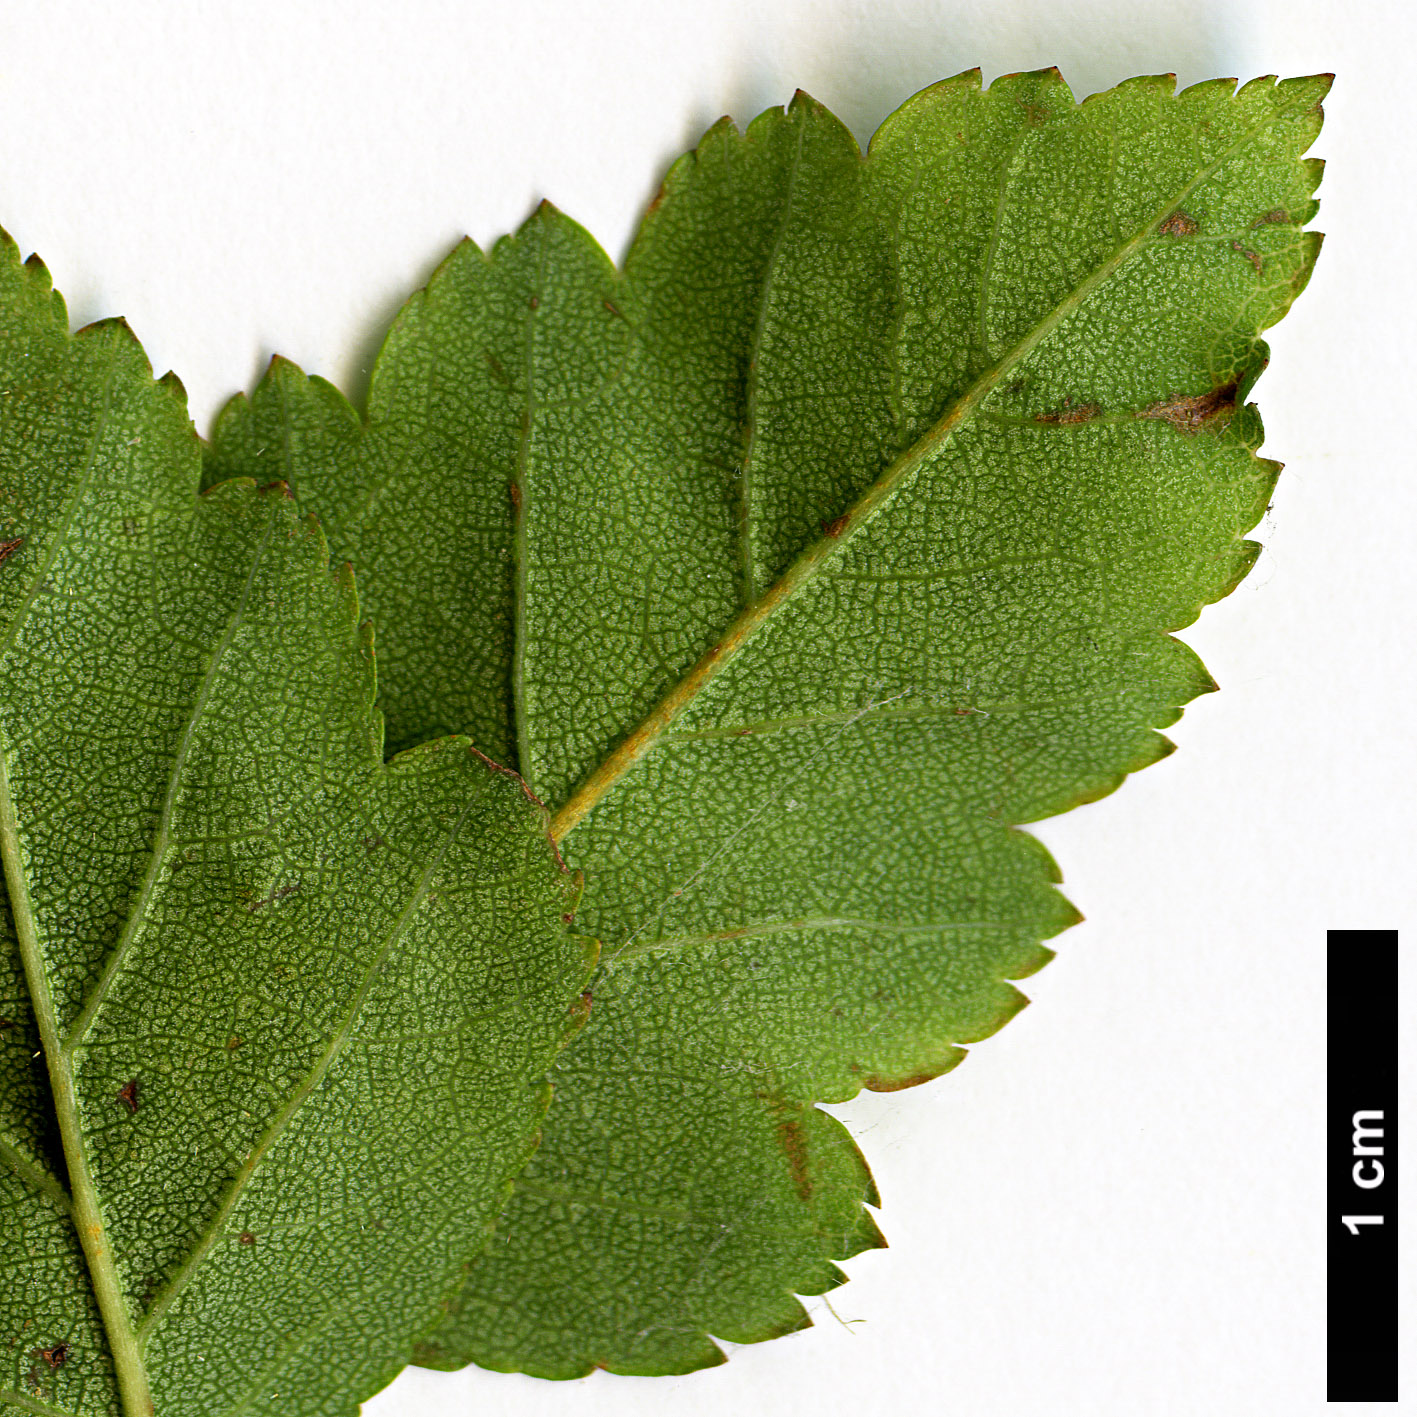 High resolution image: Family: Rosaceae - Genus: Crataegus - Taxon: mendosa